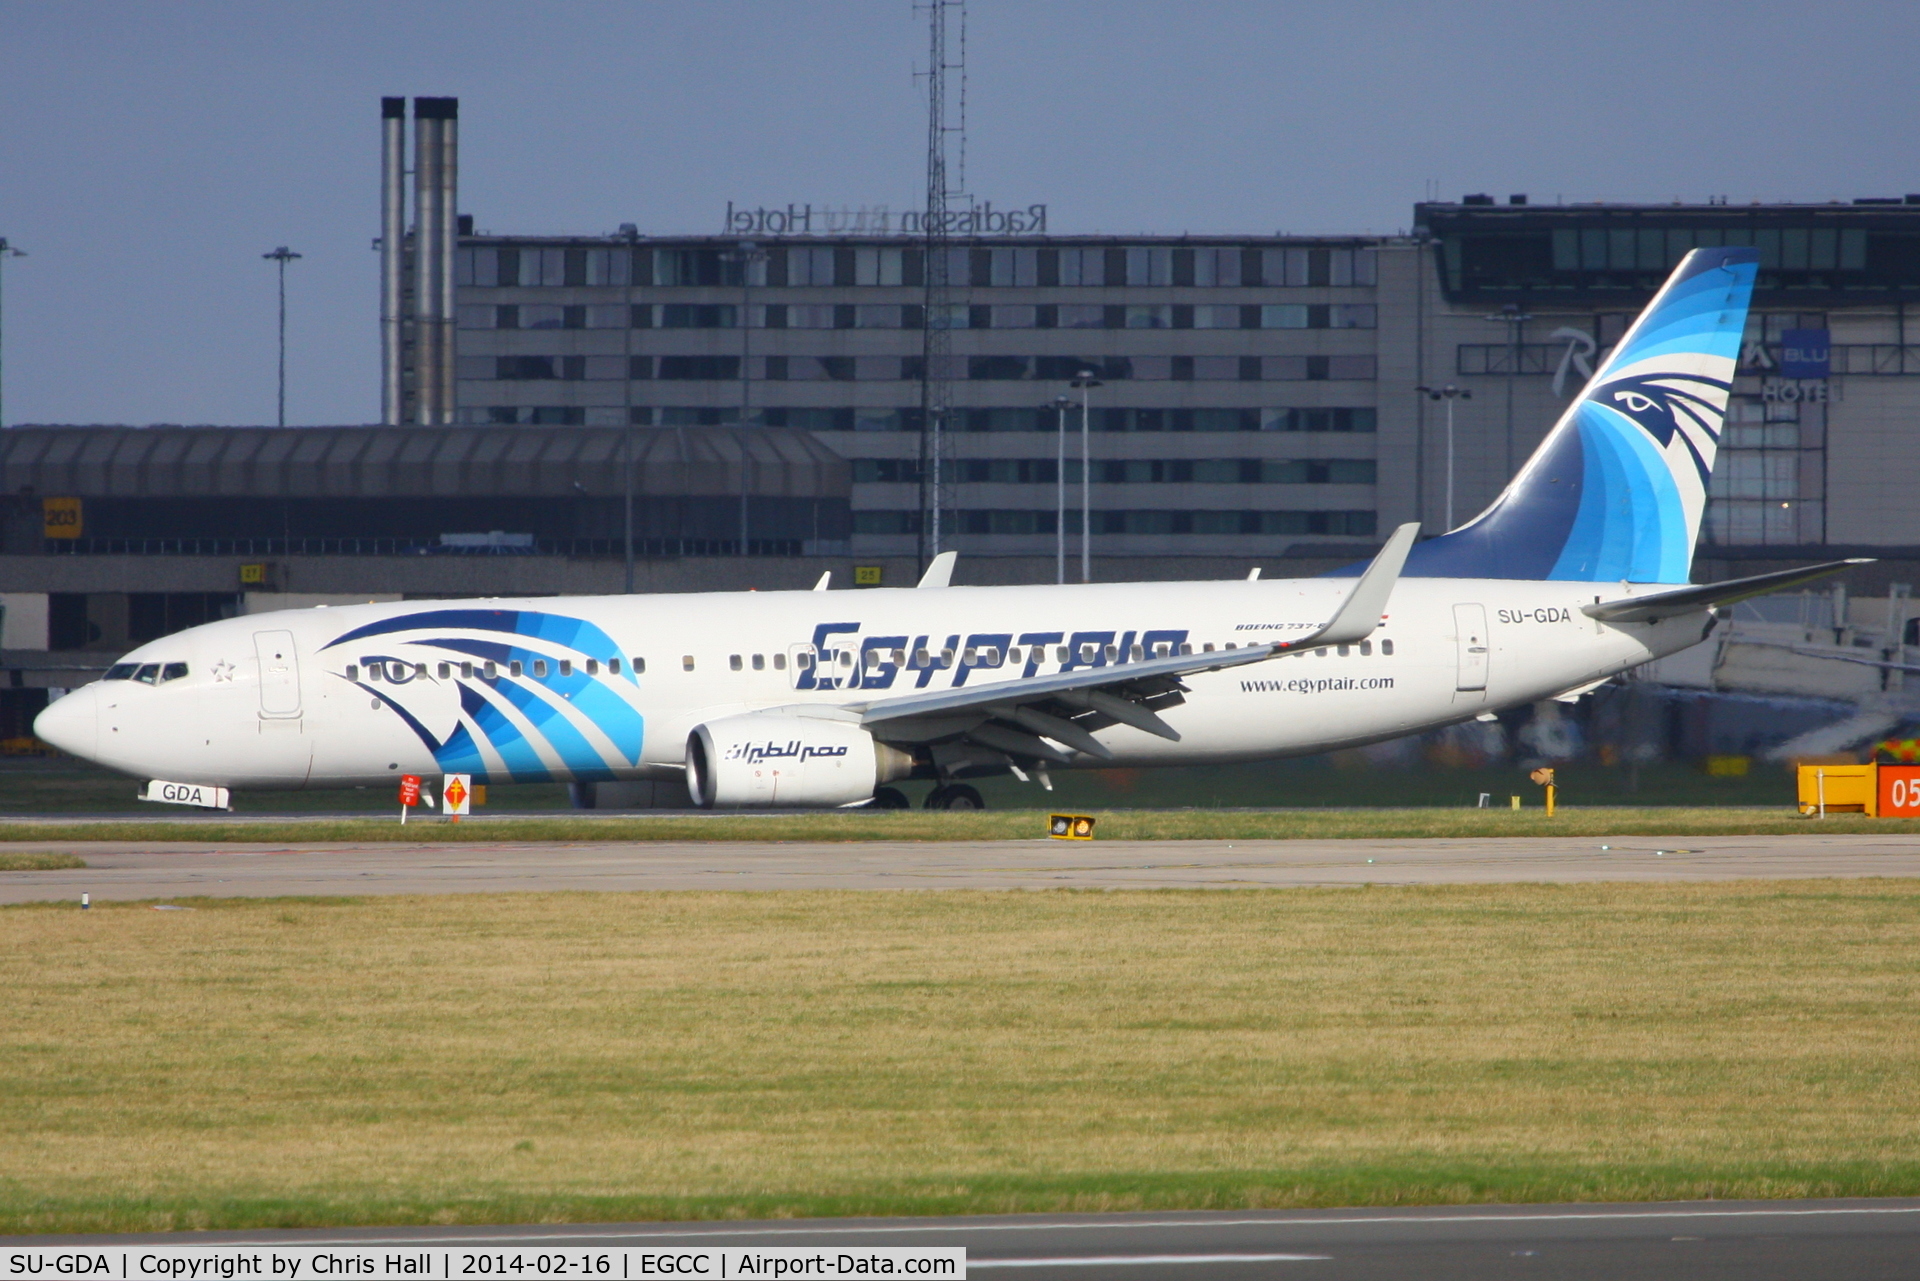 SU-GDA, 2009 Boeing 737-866 C/N 35565, Egypt Air